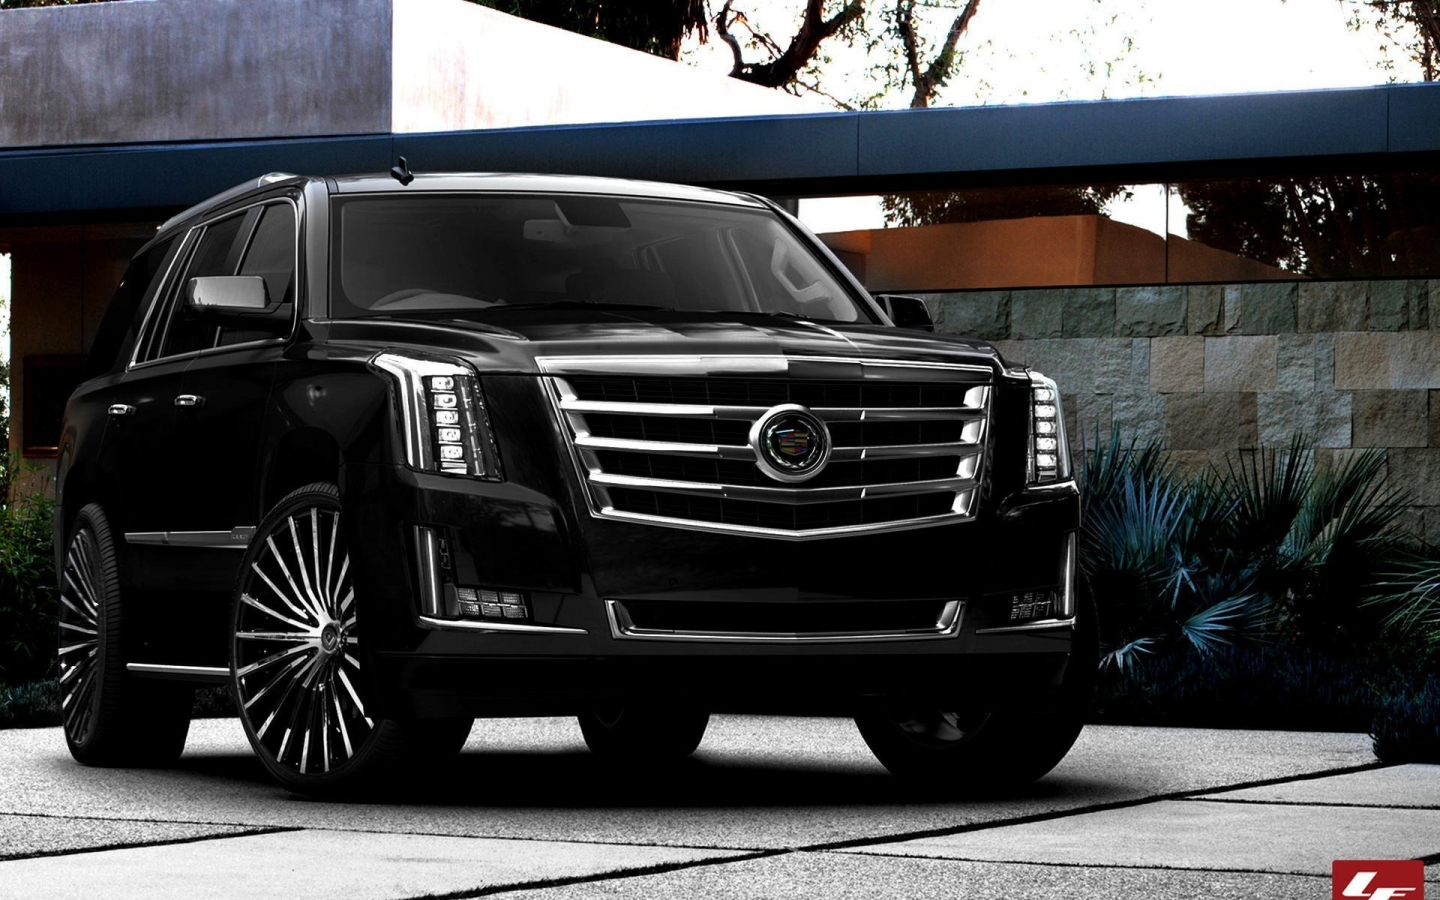  2015 Black Cadillac Escalade for 1440 x 900 widescreen resolution